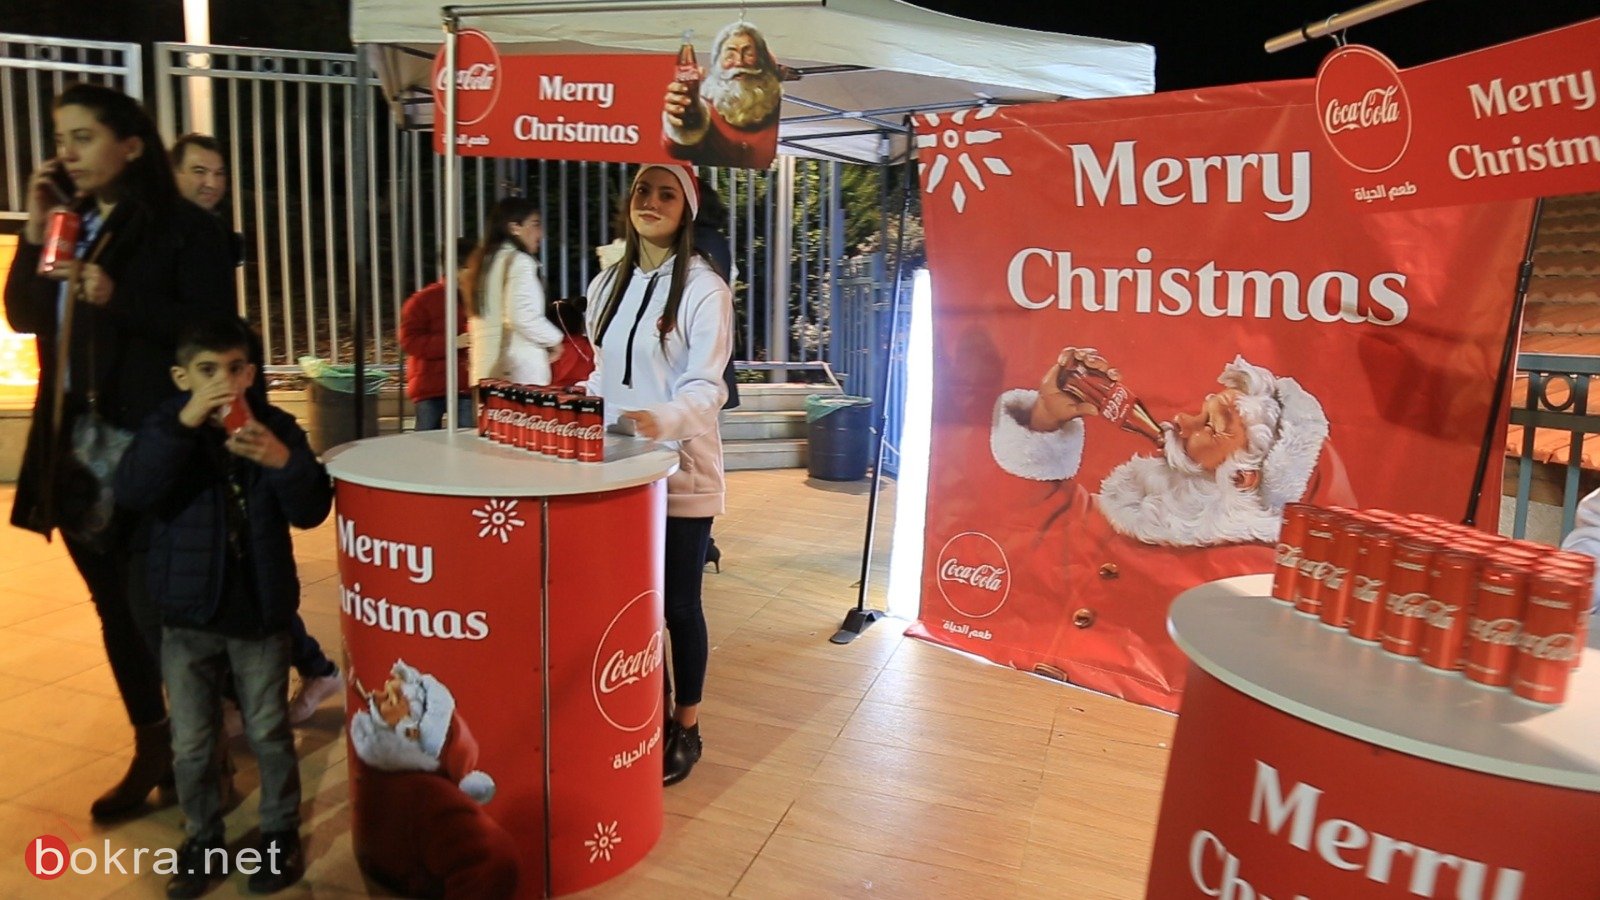 تتويج فعاليات الميلاد بأضخم عرض استعراضي غنائي راقص "كسارة الجوز" في الناصرة، برعاية كوكاكولا-1